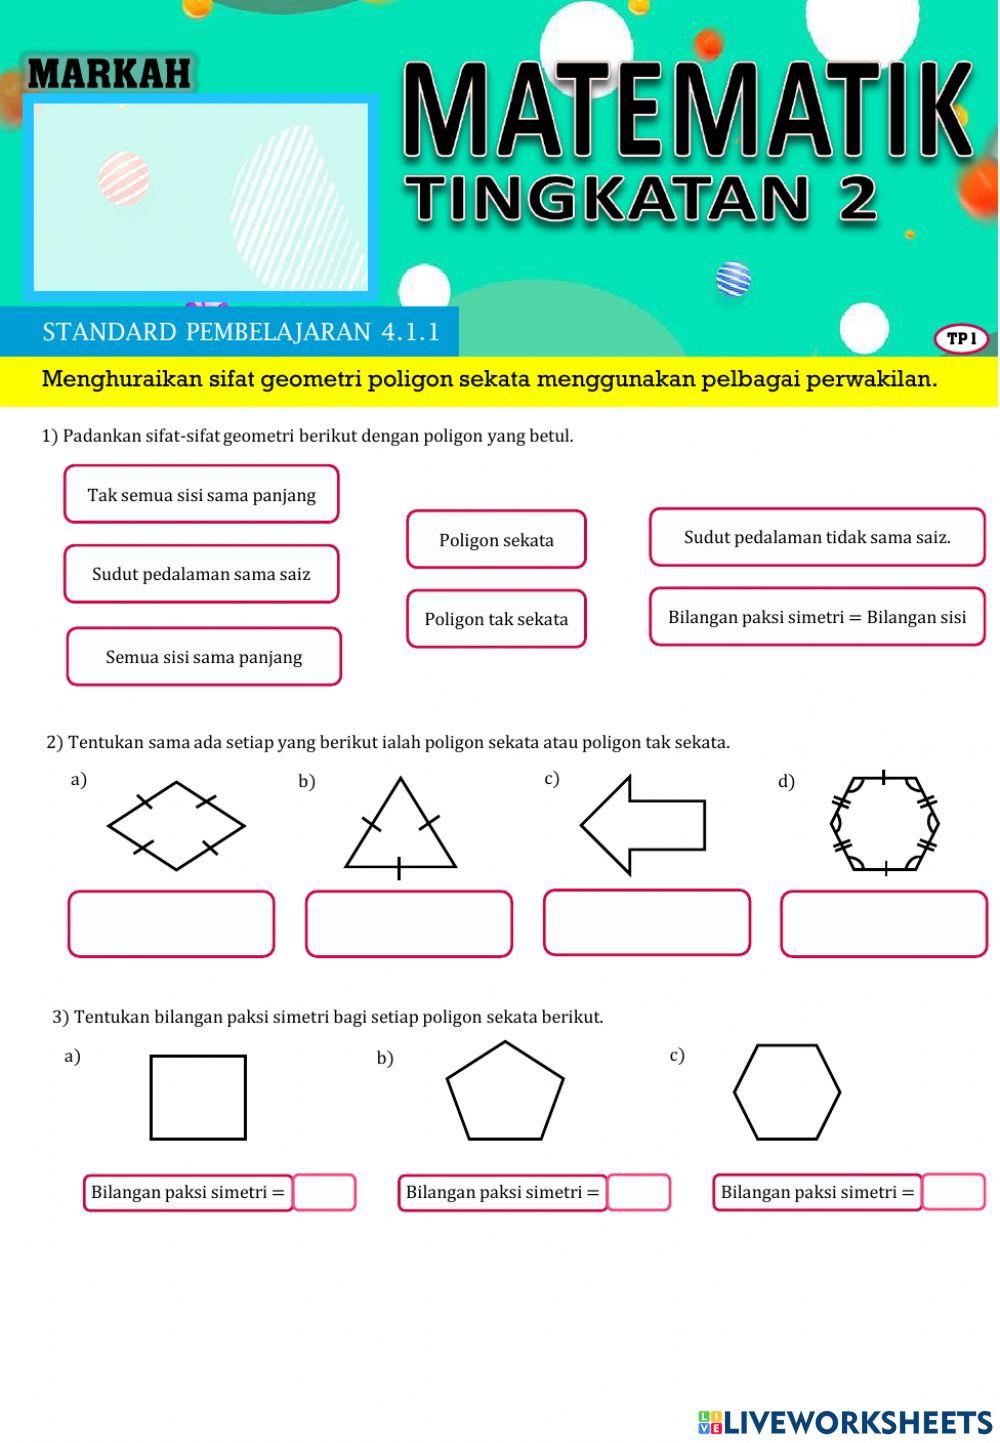 Matematik Tingkatan 2:Menghuraikan sifat geometri poligon sekata menggunakan pelbagai perwakilan.